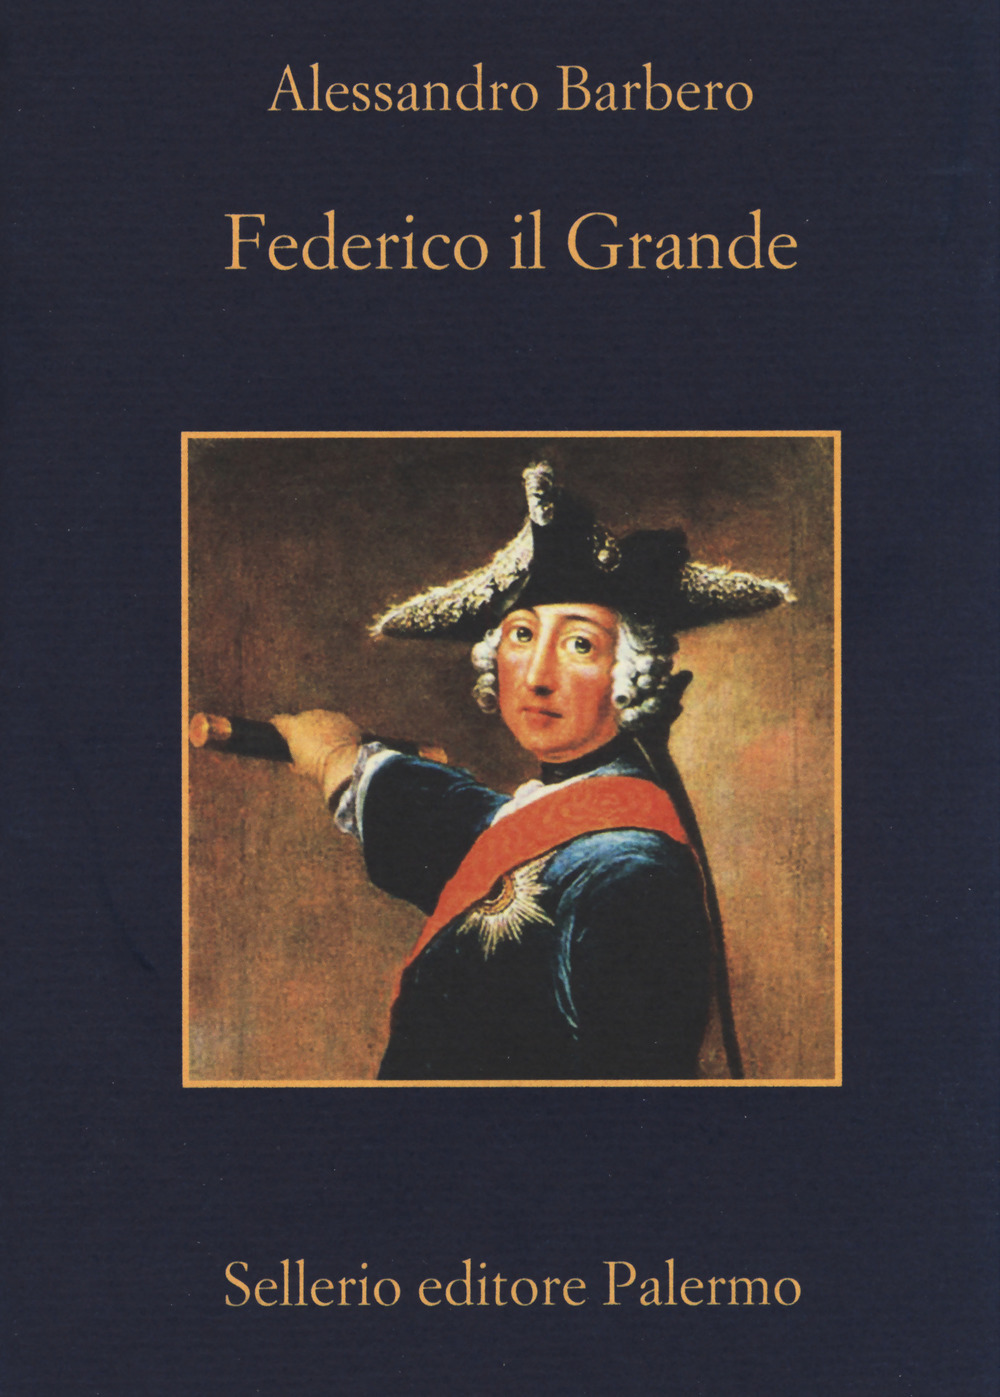 Federico il Grande - Alessandro Barbero - Sellerio Editore Palermo